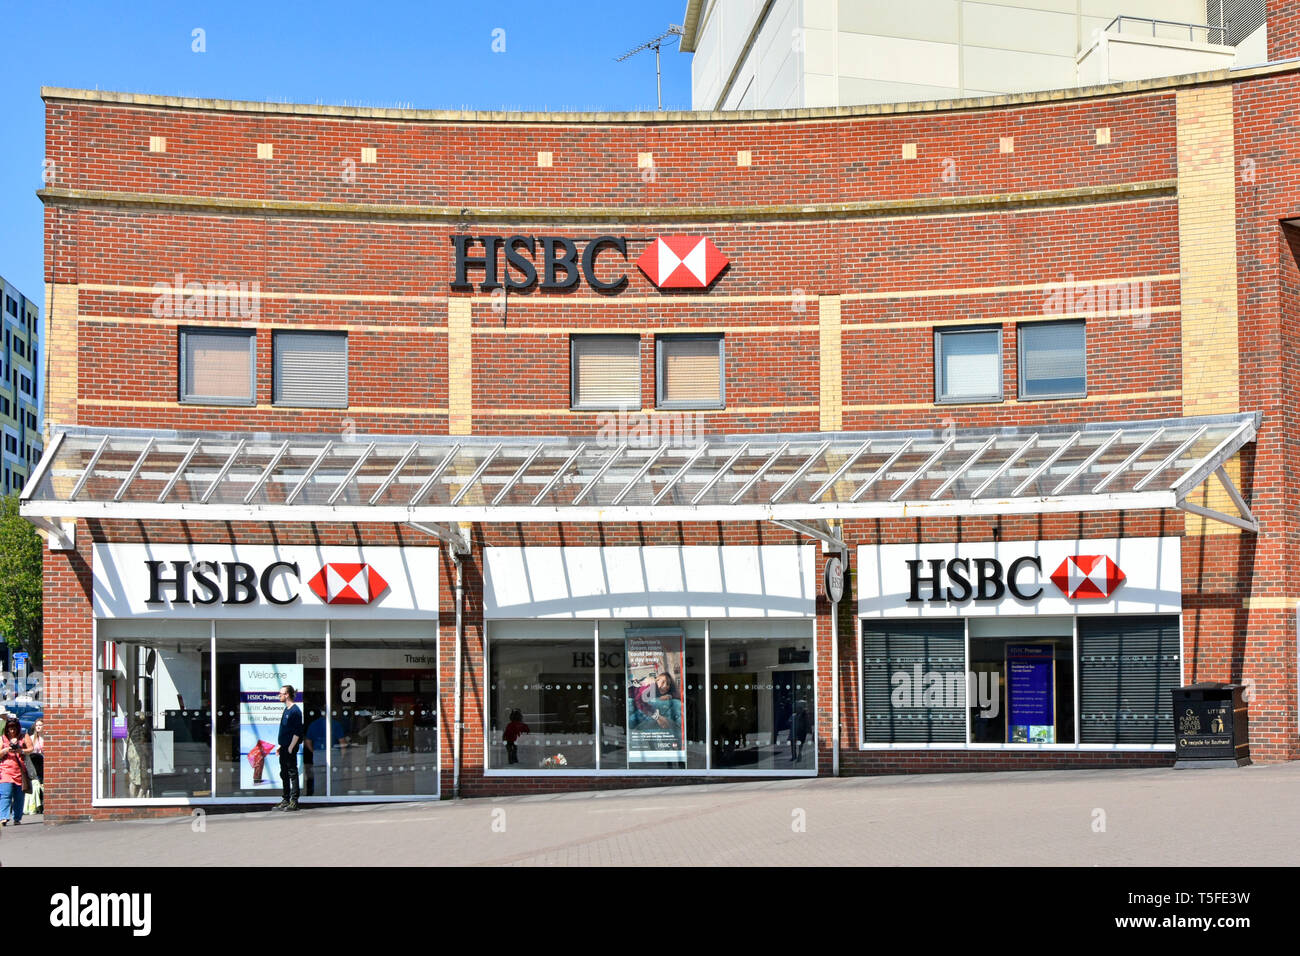 Vista de HSBC signos y logotipos que aparecen en la ventana delantera tienda fachada de ladrillo High street la construcción de un importante banco británico de negocios sucursal bancaria en Southend, Essex Foto de stock